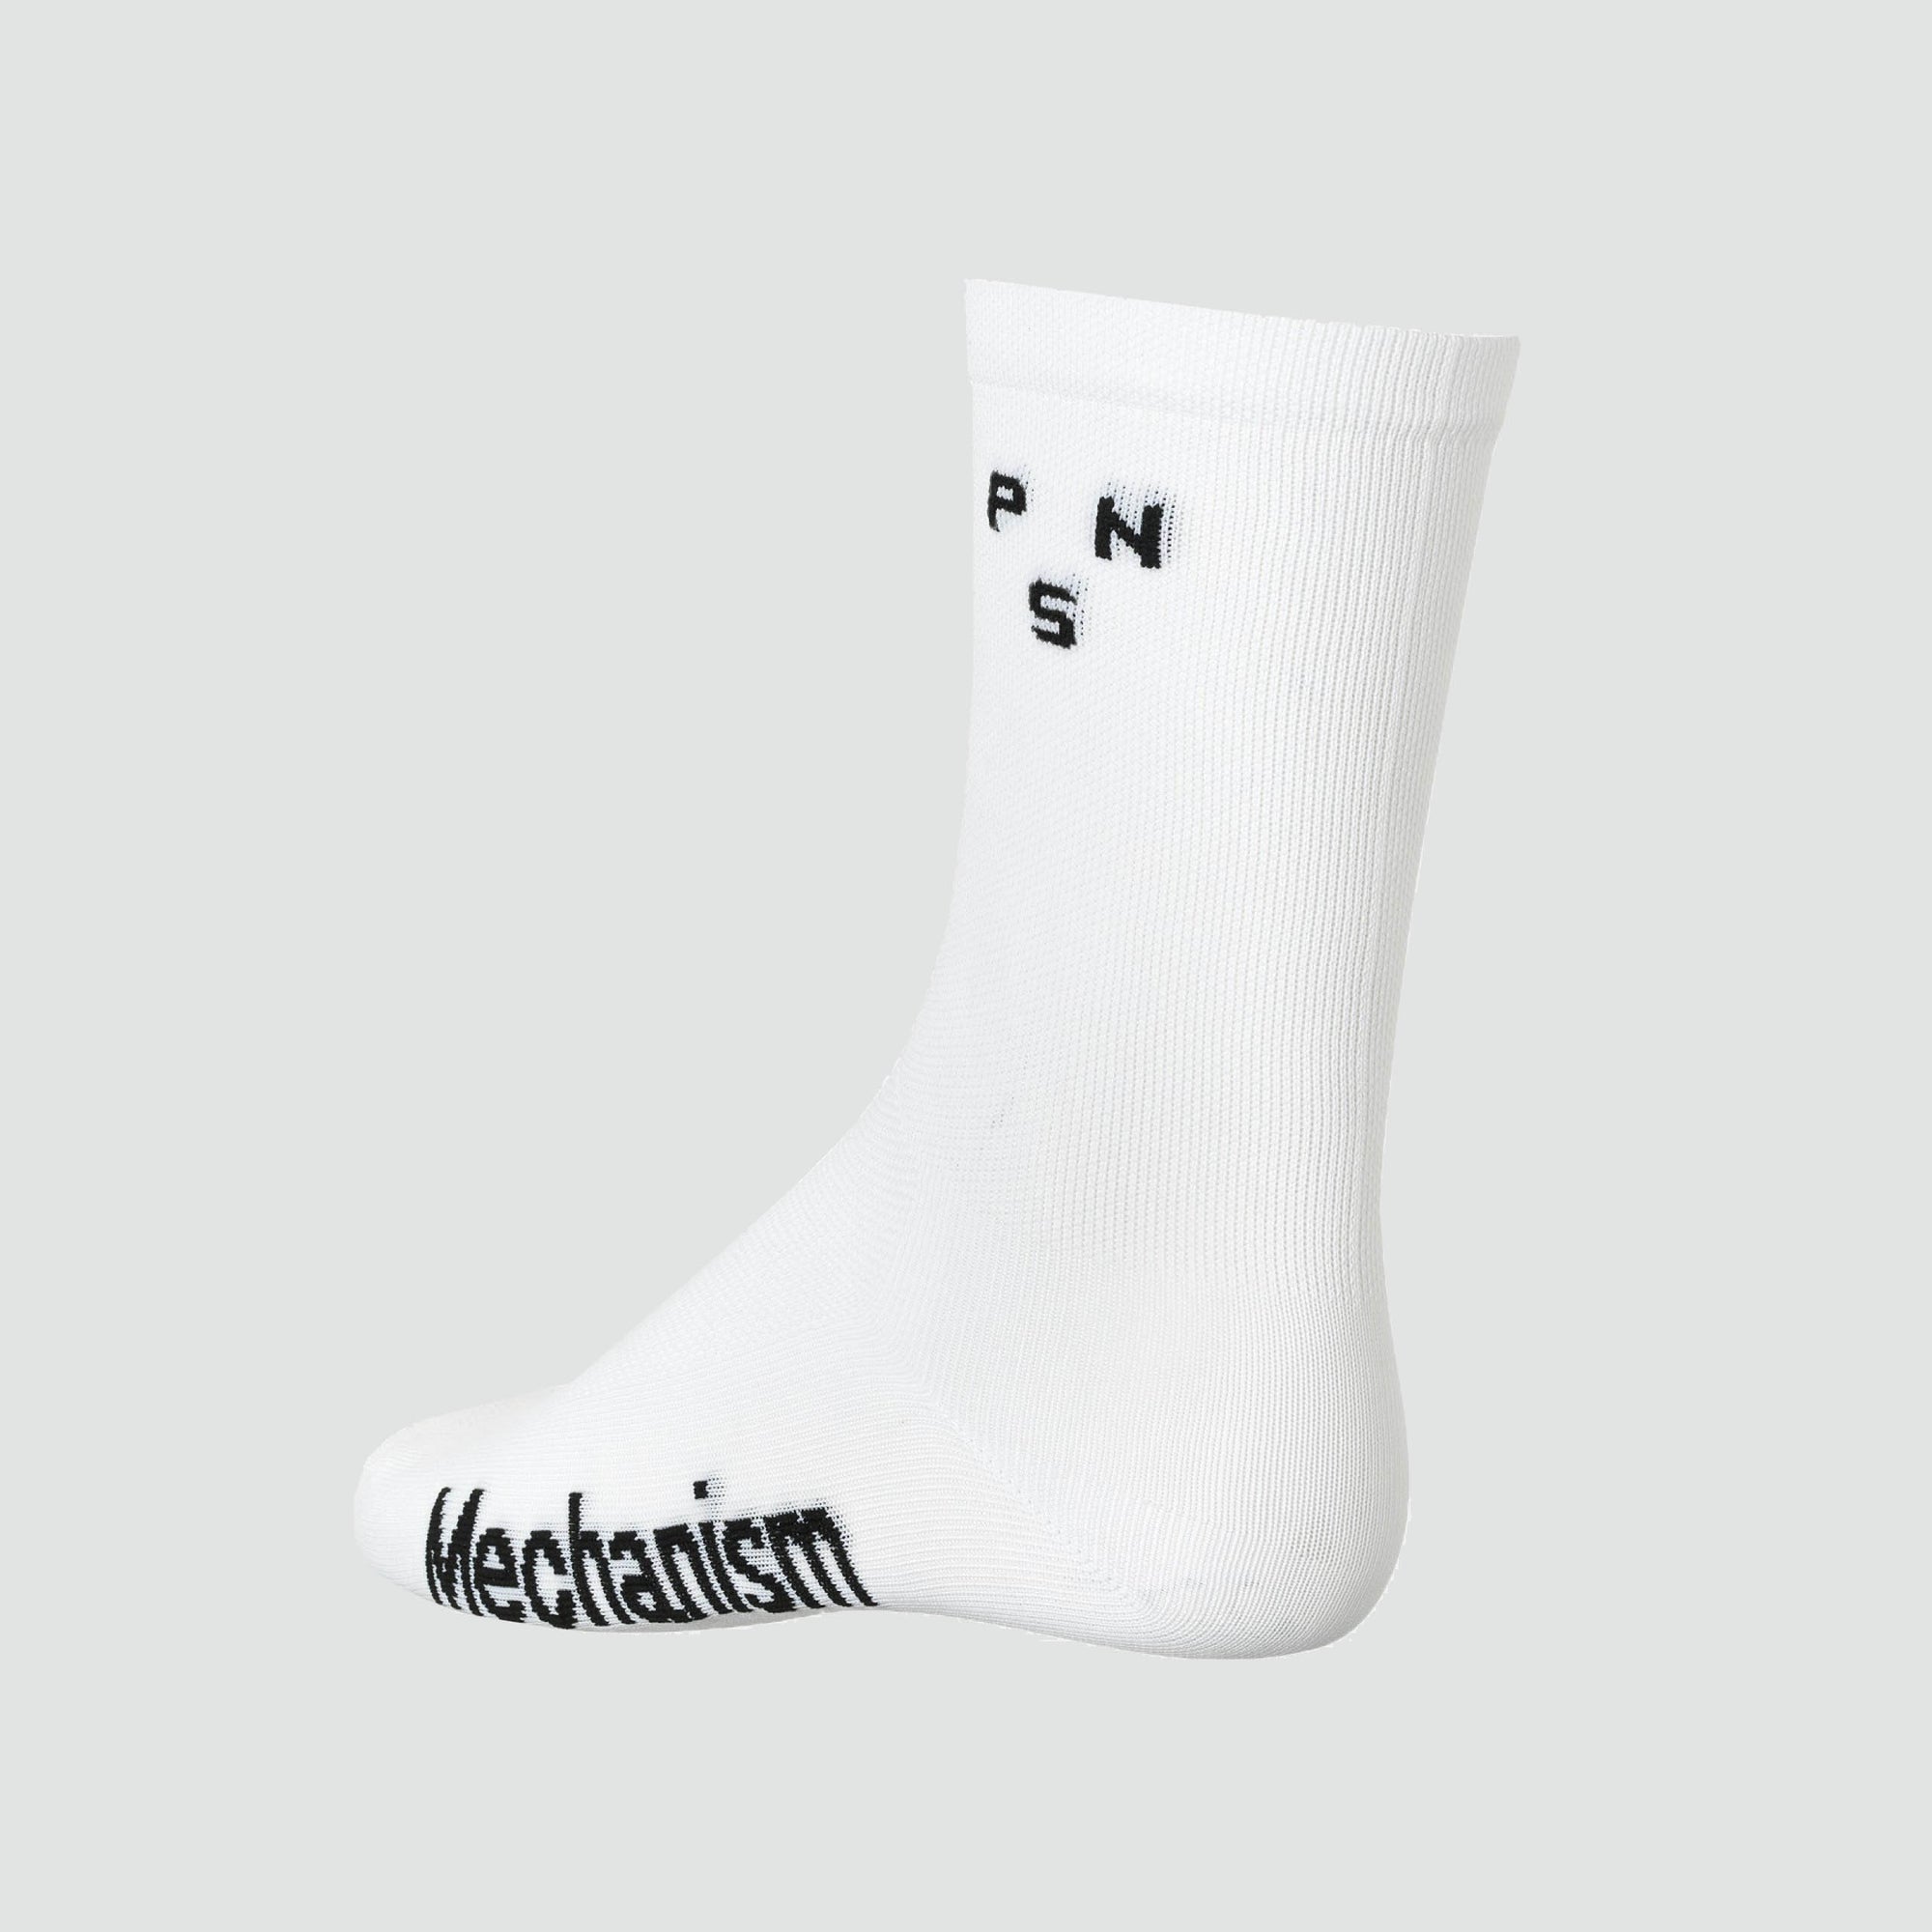 Mechanism Socks - White